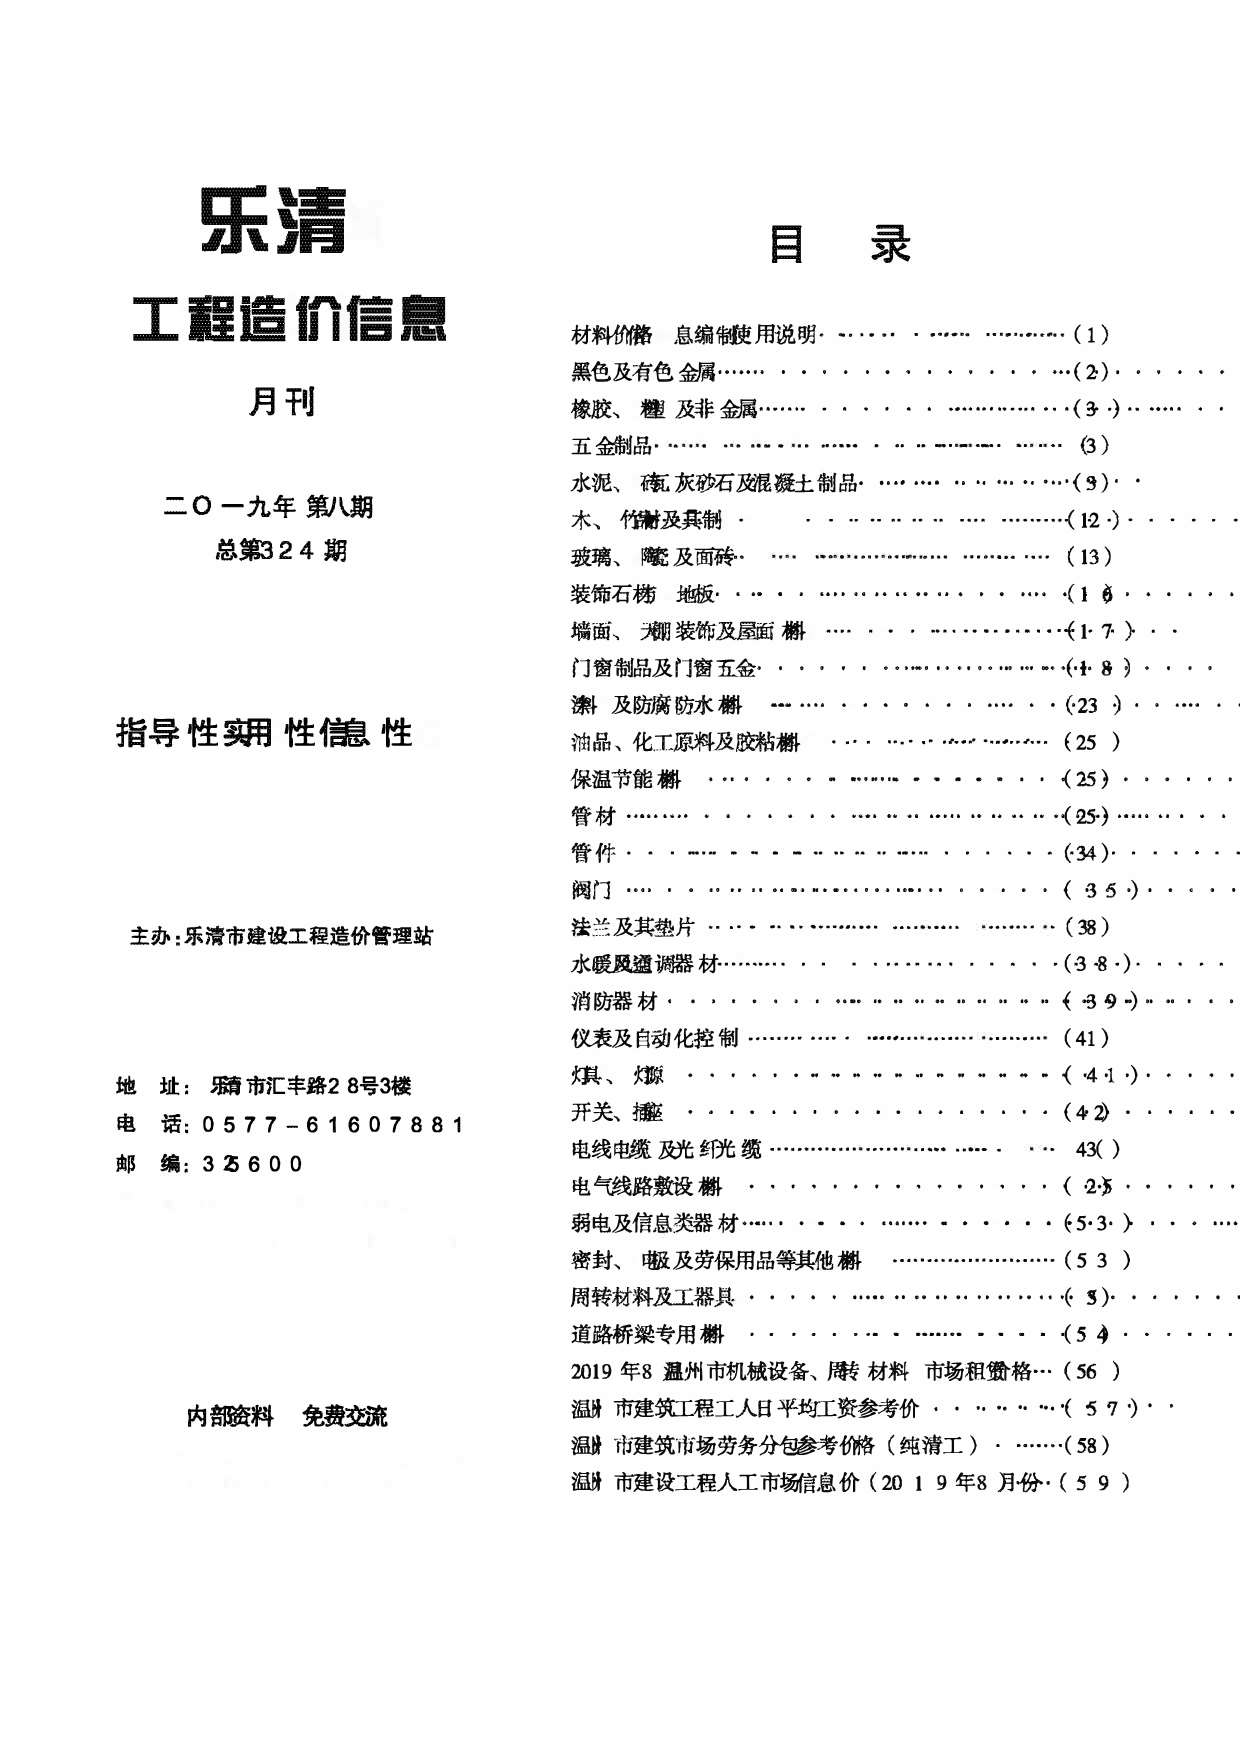 乐清市2019年8月工程信息价_乐清市信息价期刊PDF扫描件电子版